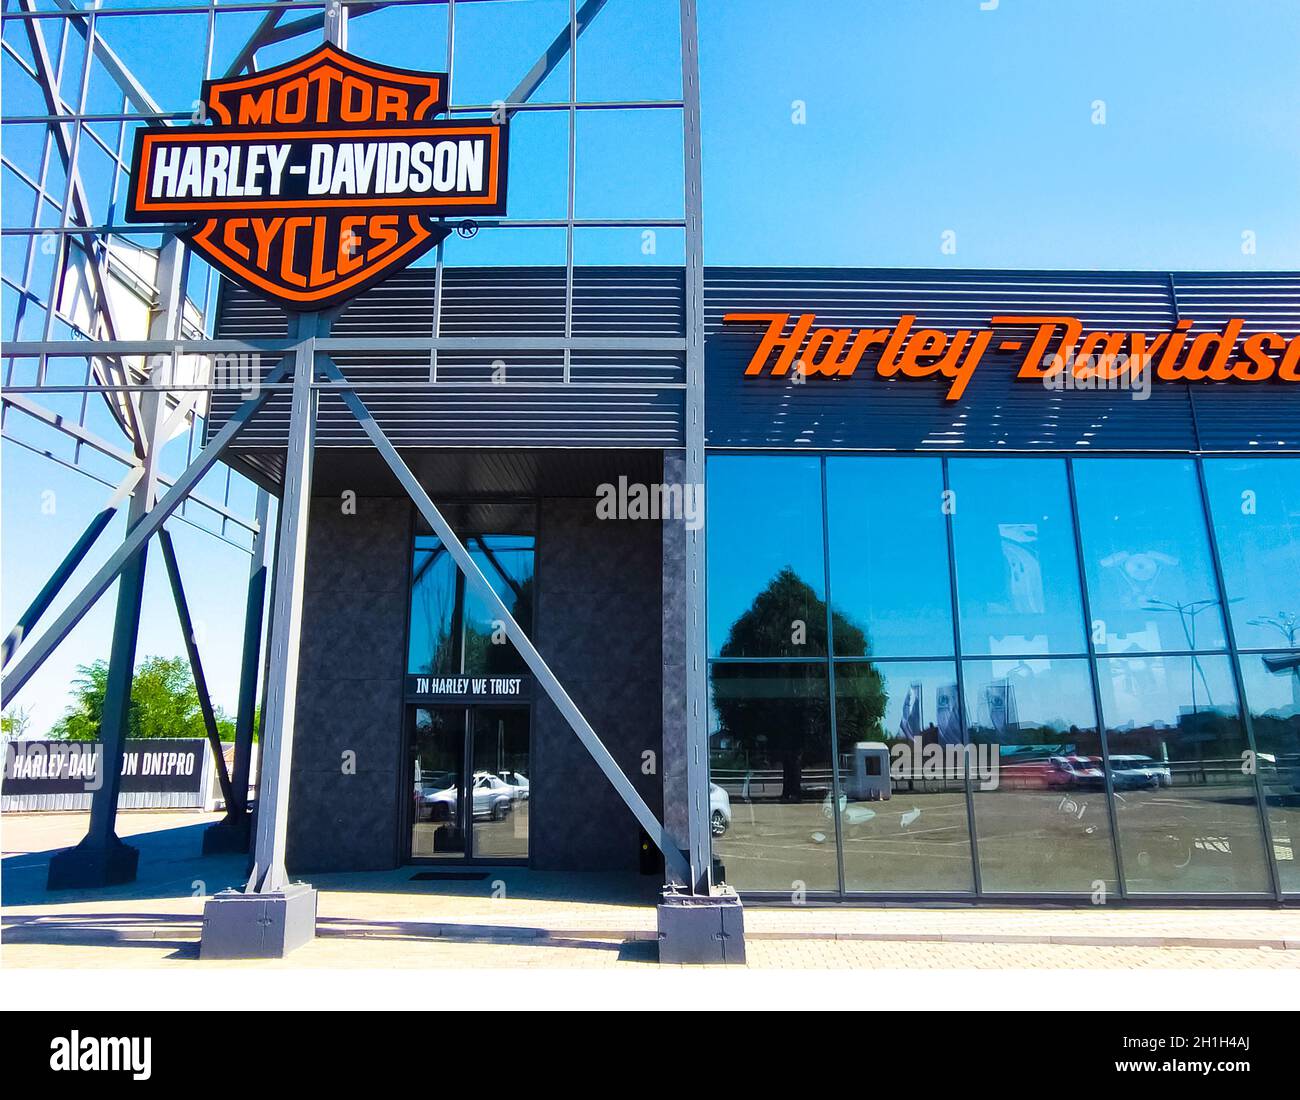 Kiev, Ukraine - 15 août 2020 : boutique et bureau Harley-Davidson.Harley-Davidson, ou Harley, est un fabricant américain de motos, fondé à Milwa Banque D'Images